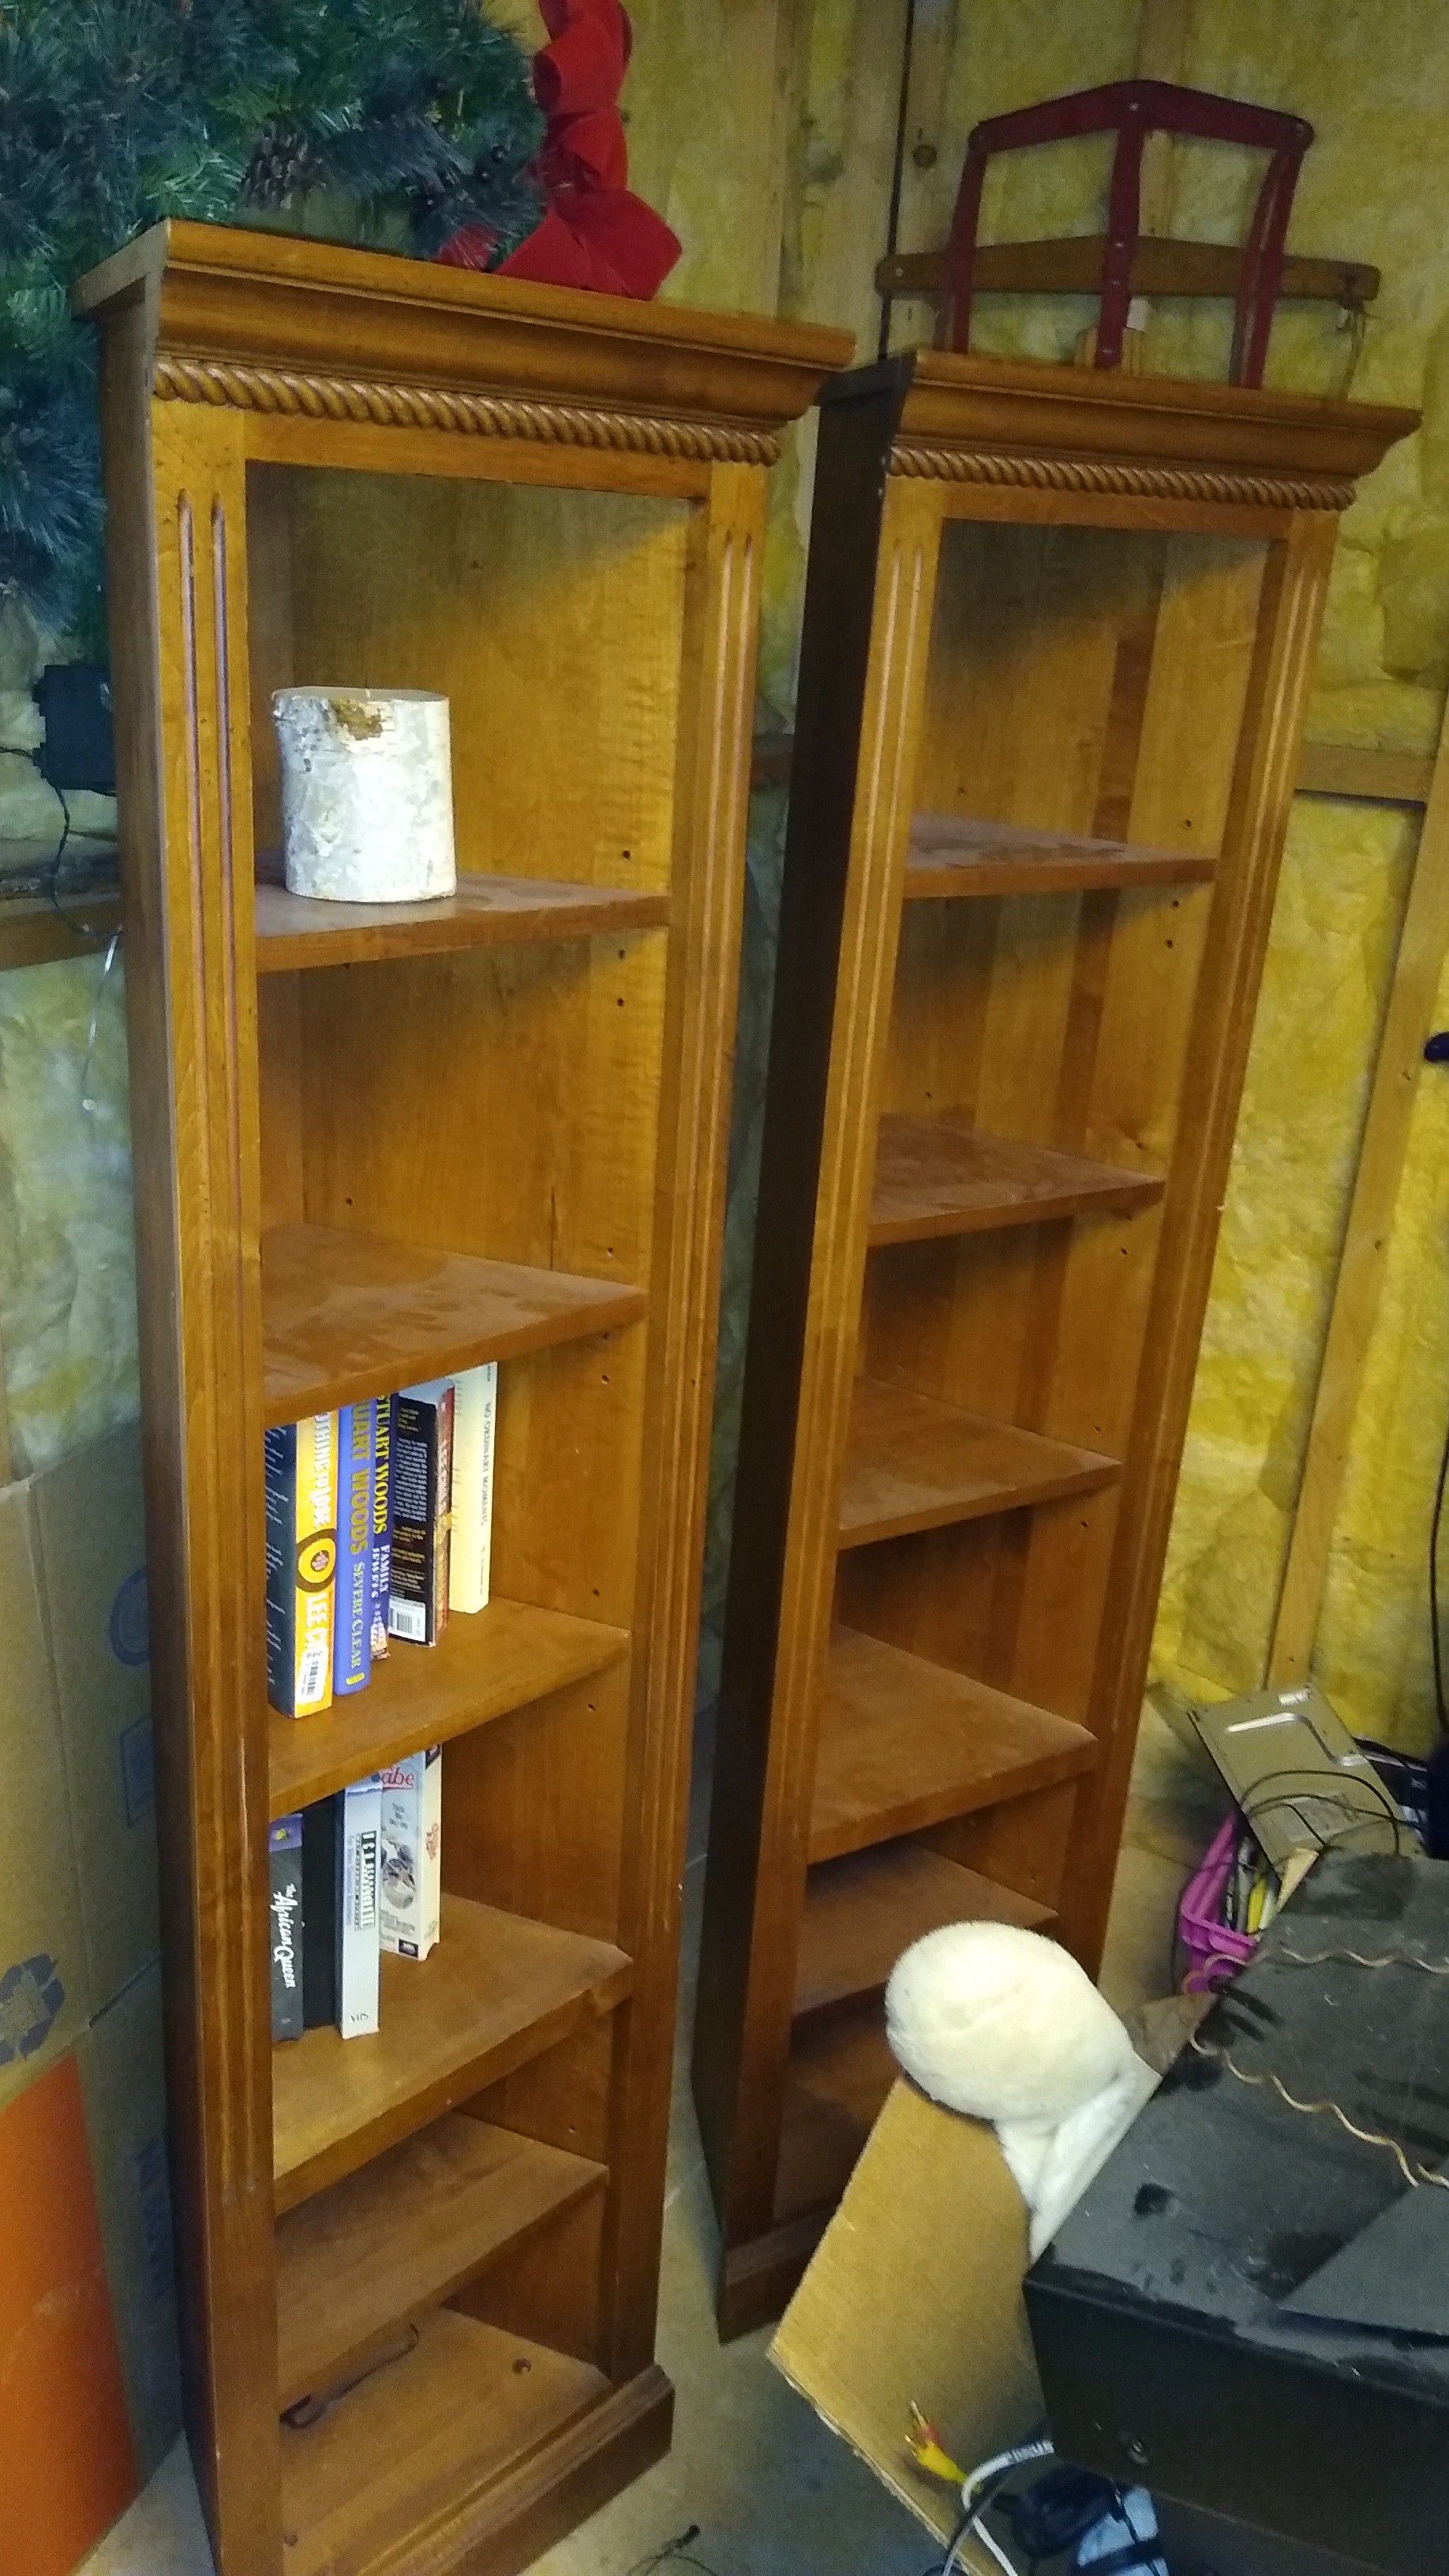 Matching wooden corner shelves